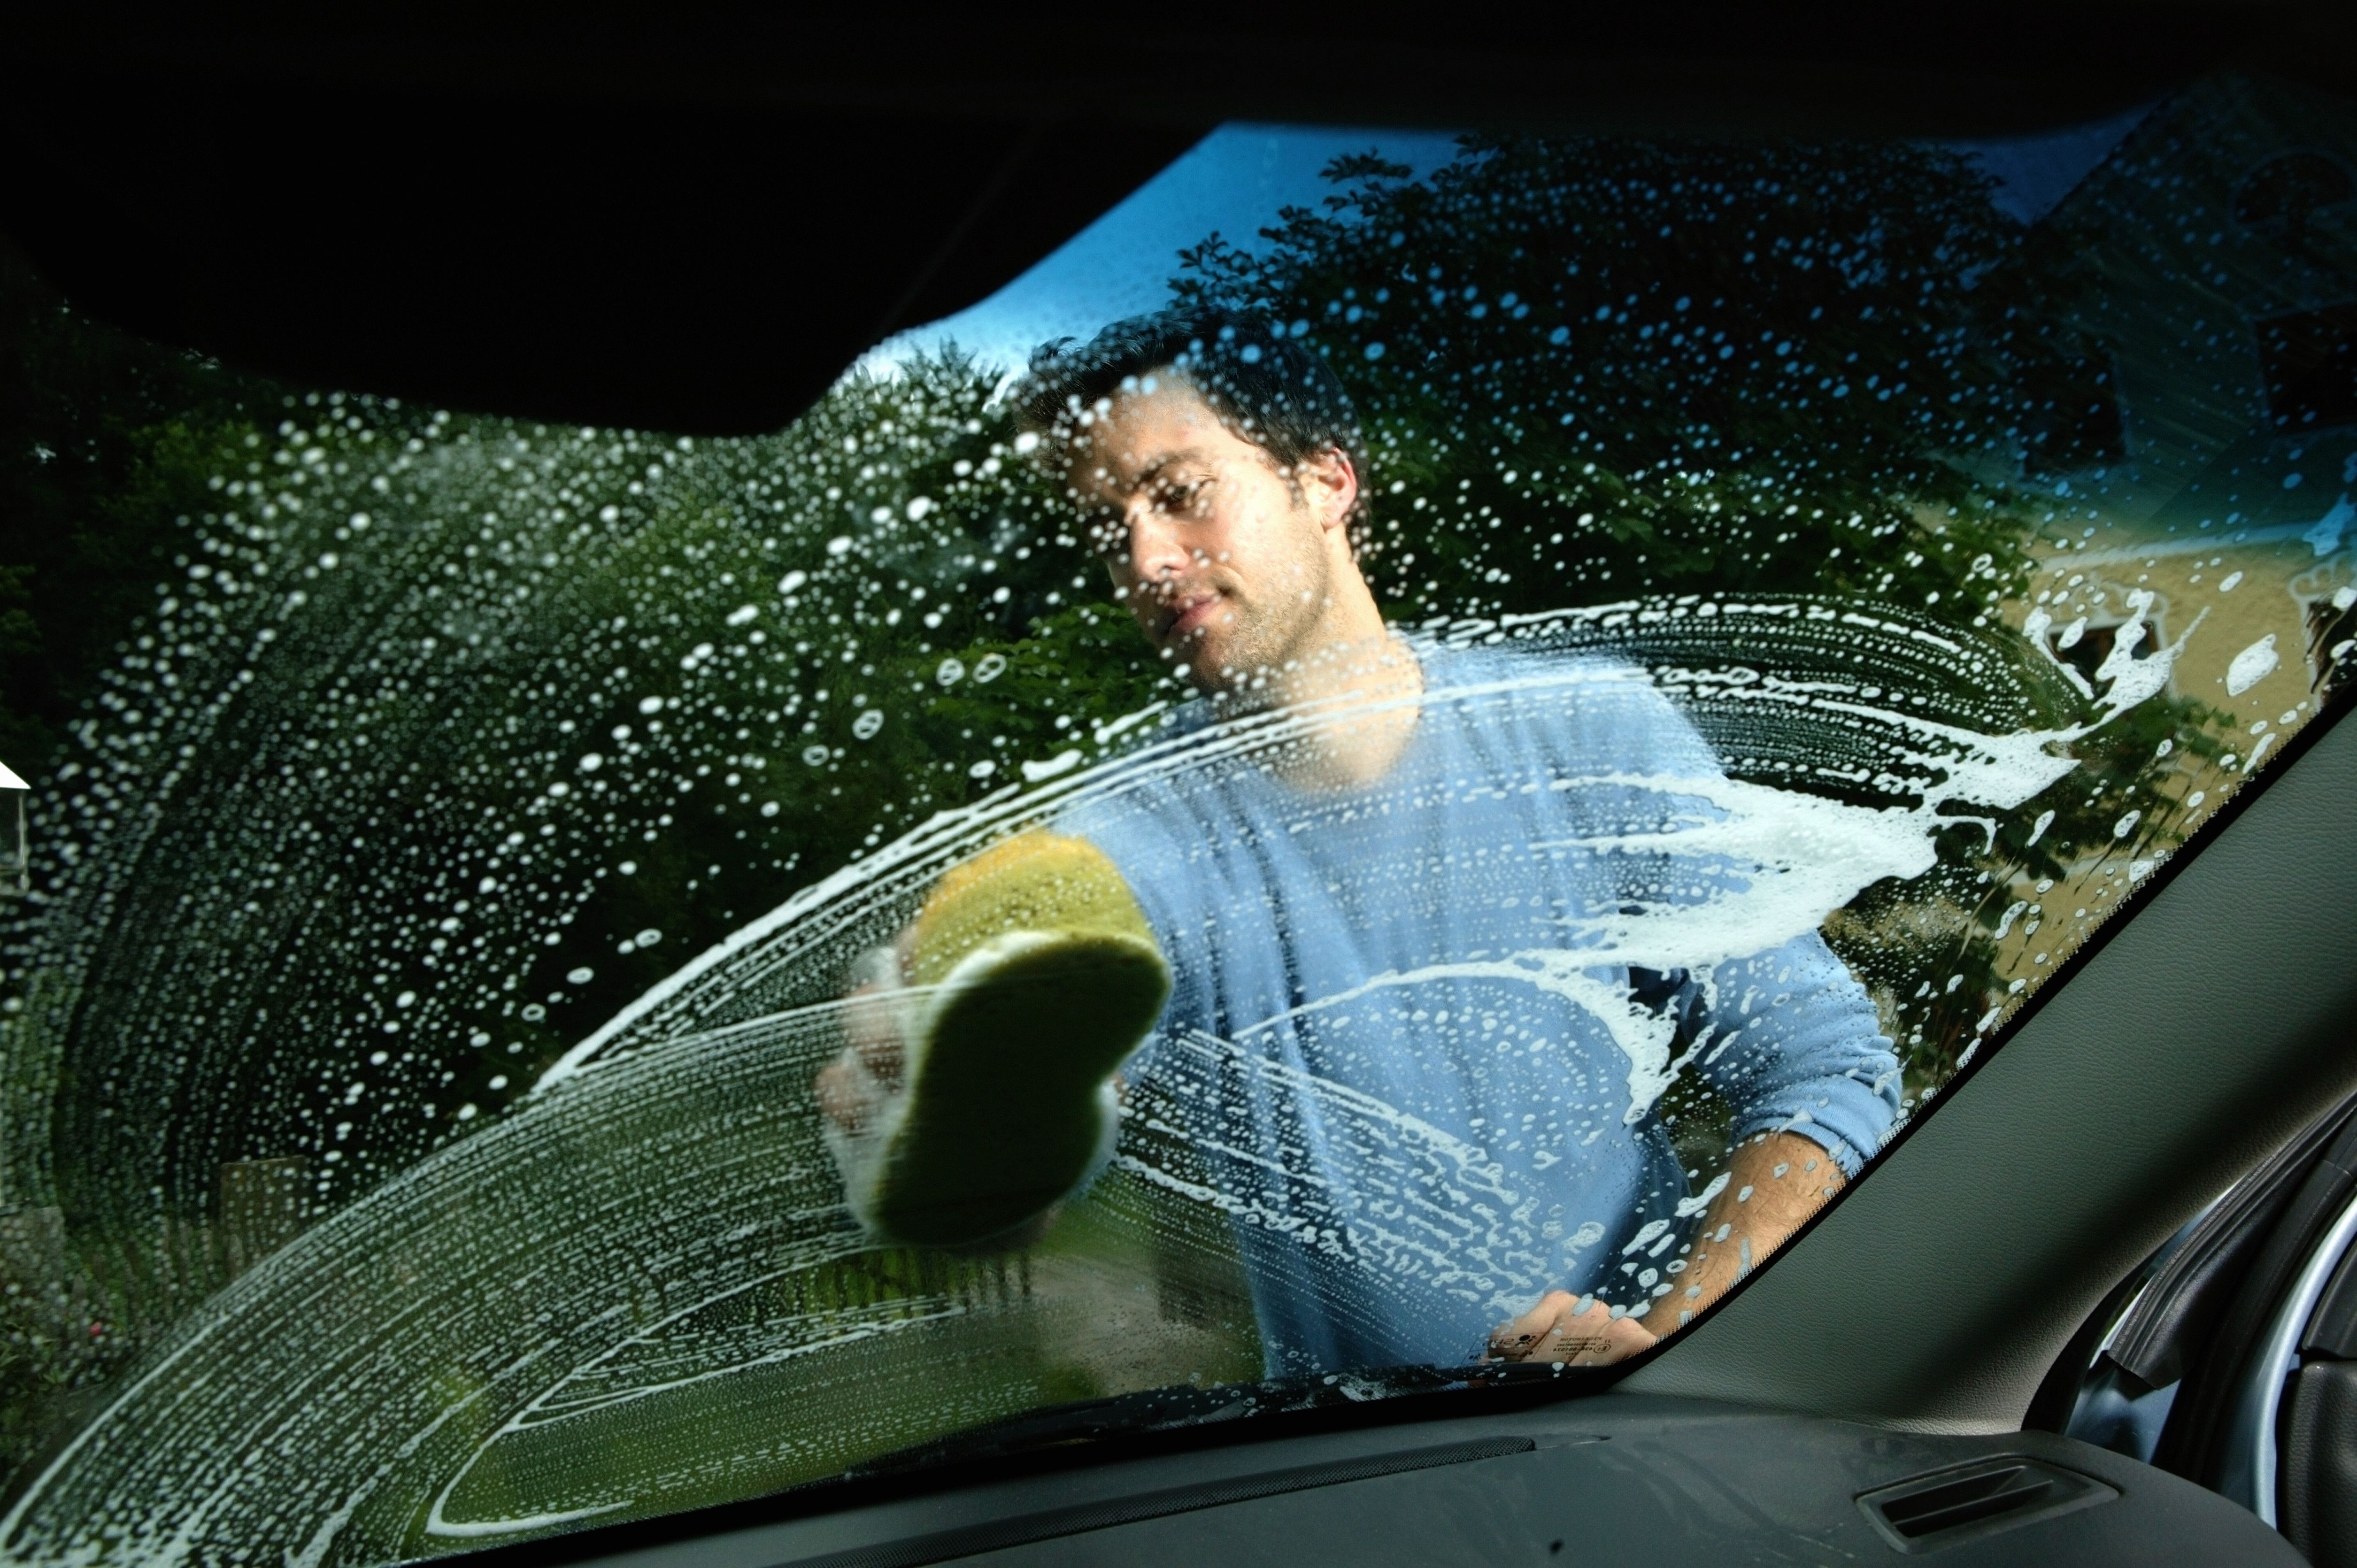 Cómo limpiar el coche en profundidad: consejos y productos